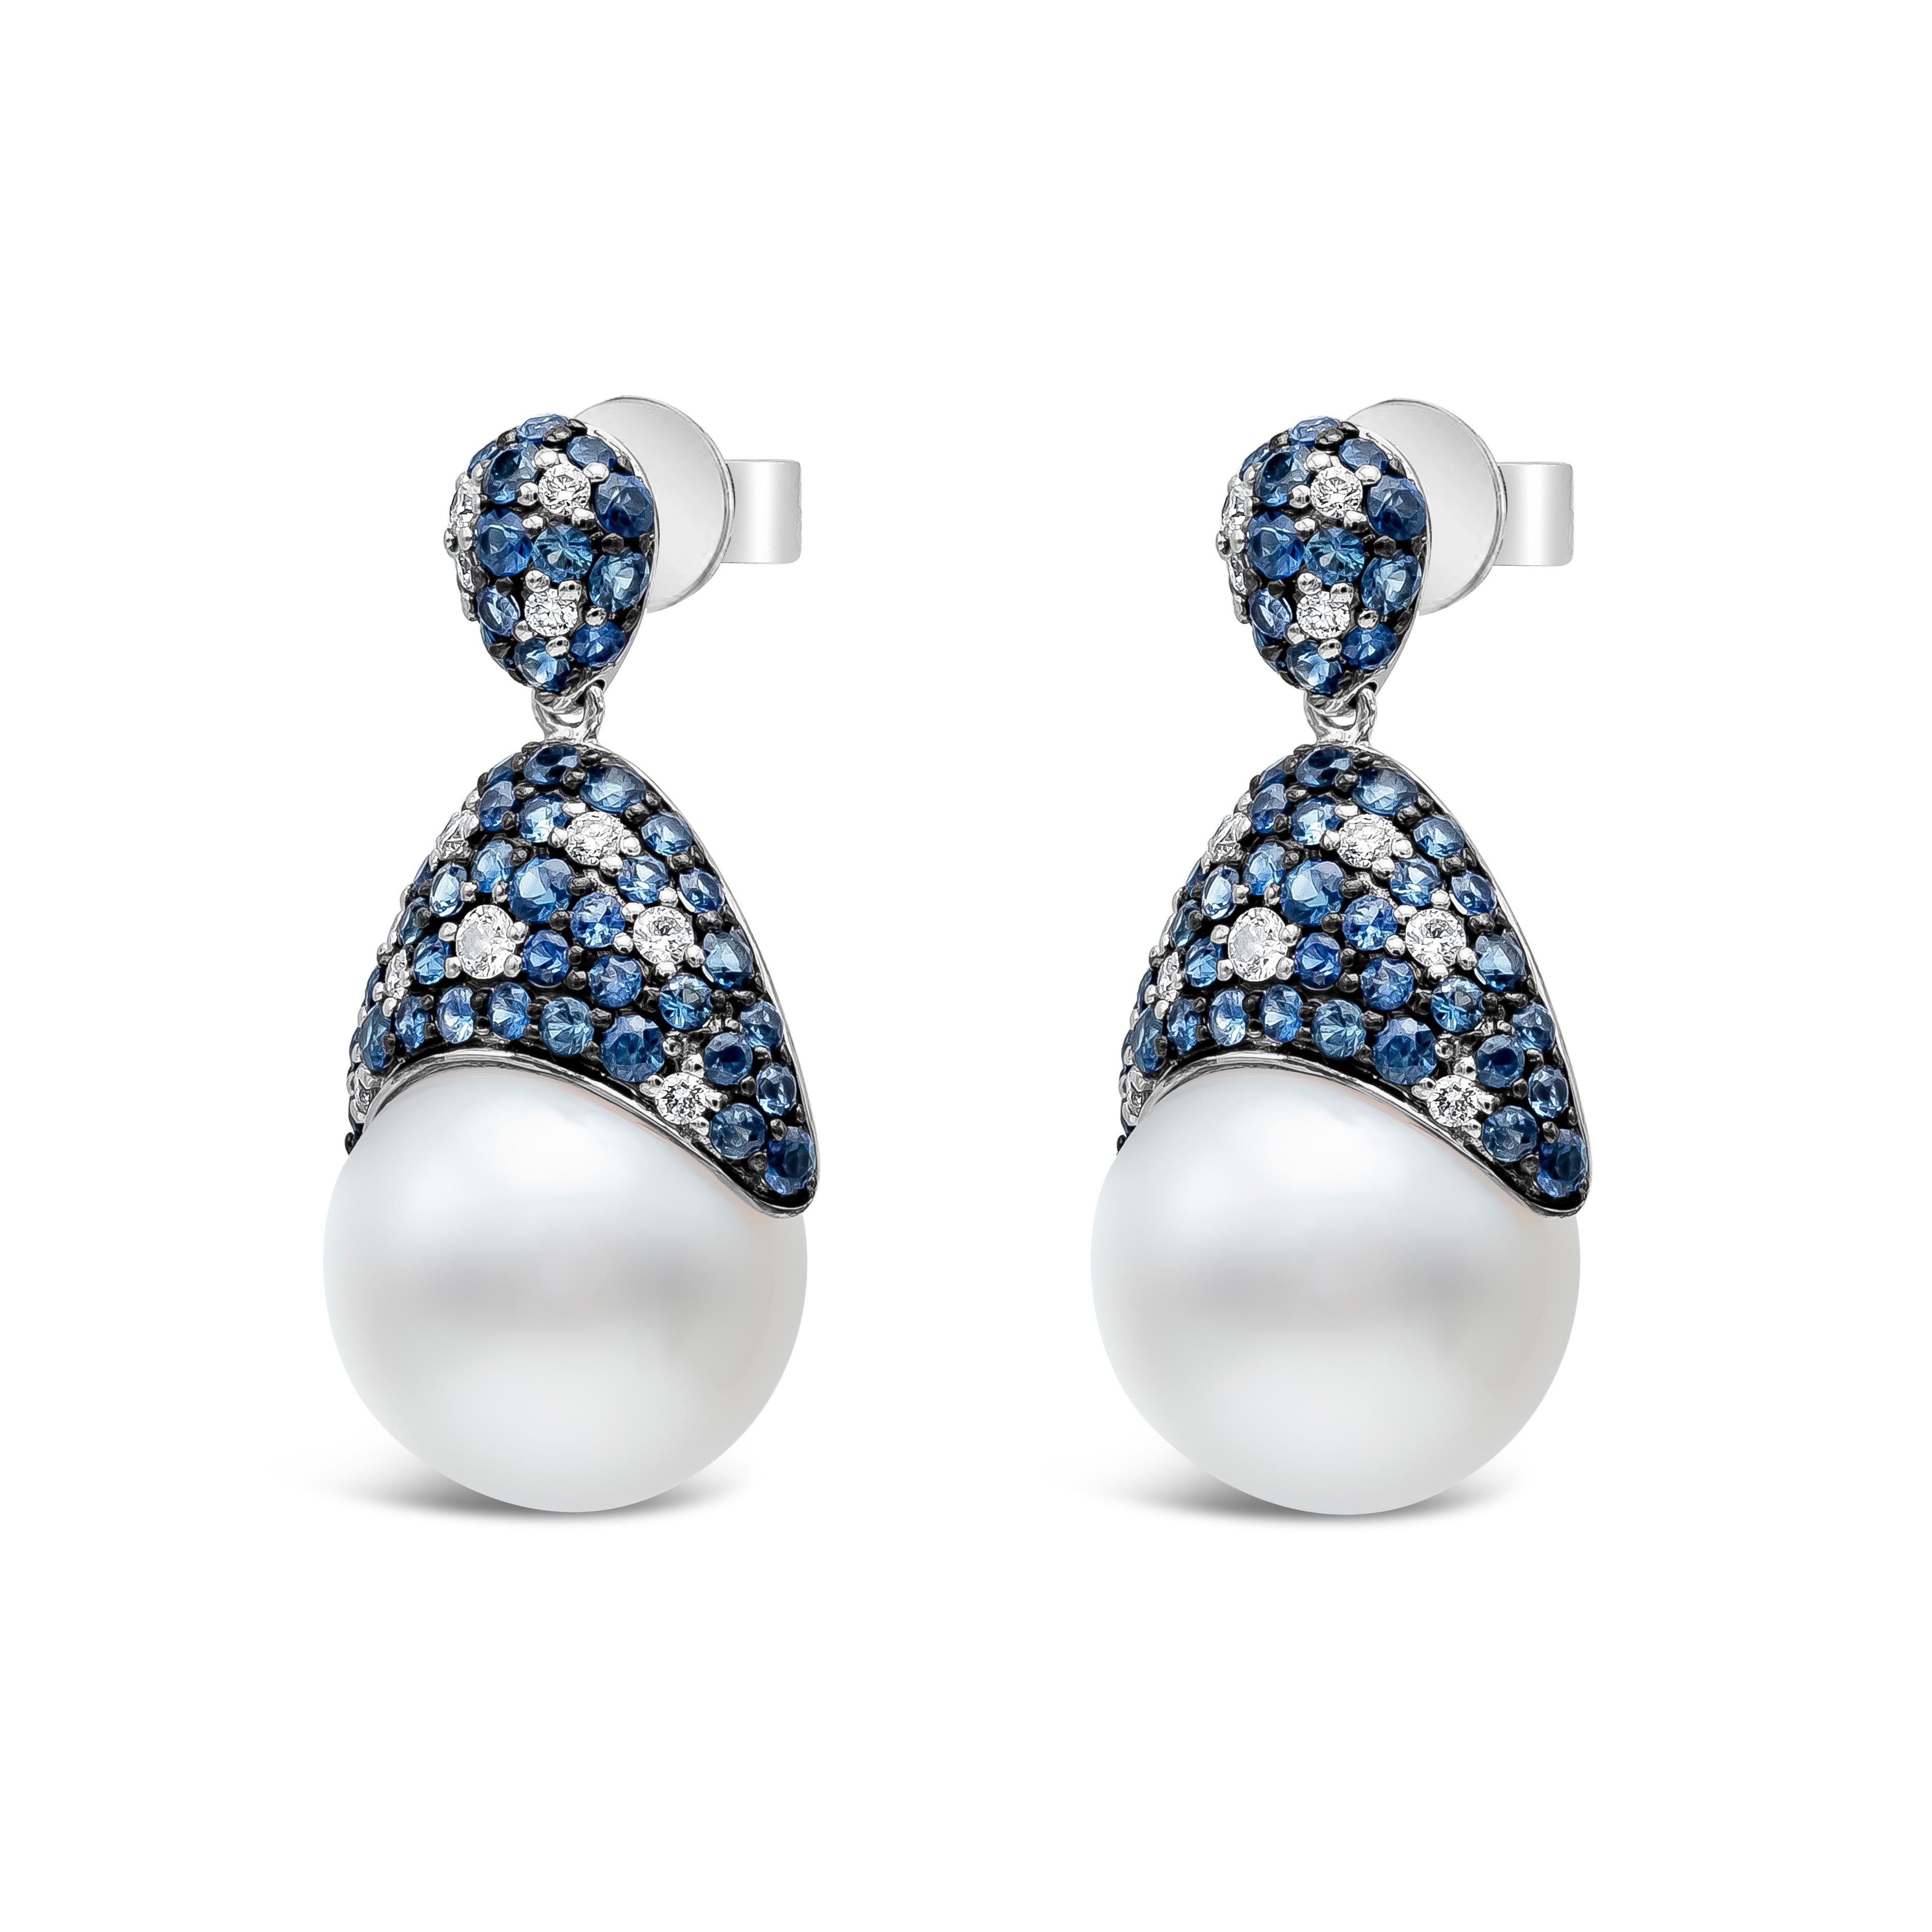 Ces boucles d'oreilles sont composées de perles des mers du Sud de 13 à 14 mm de diamètre et d'un motif incrusté unique. Il comprend 106 saphirs bleus pesant 3,07 carats au total et 26 diamants ronds pesant 0,45 carat au total. Fabriqué avec de l'or